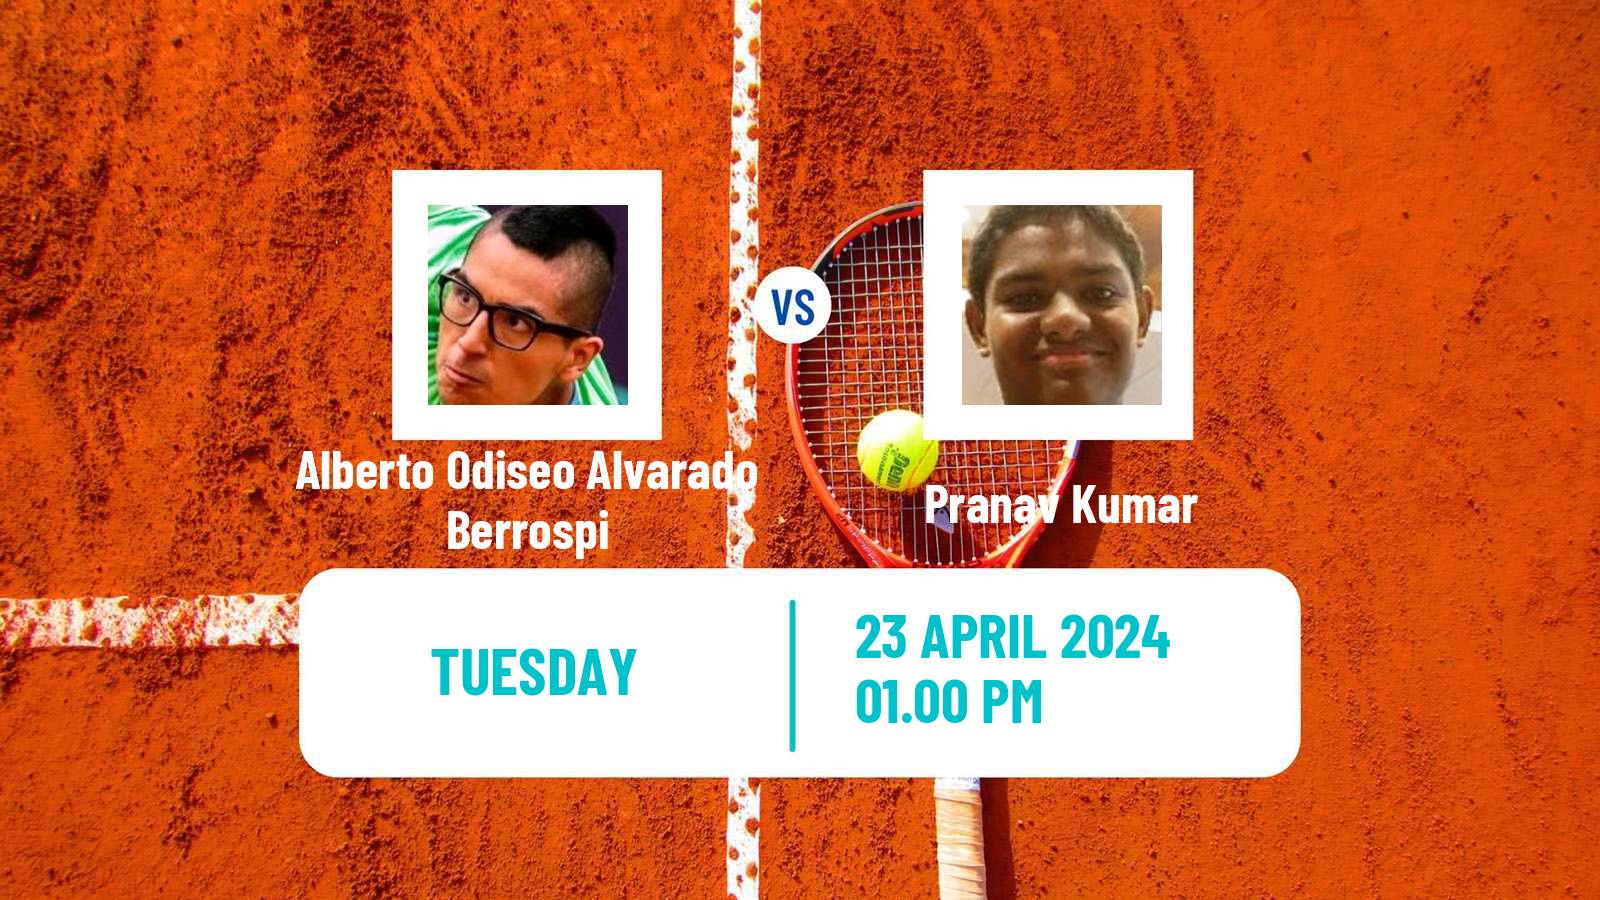 Tennis ITF M25 Mosquera Men Alberto Odiseo Alvarado Berrospi - Pranav Kumar